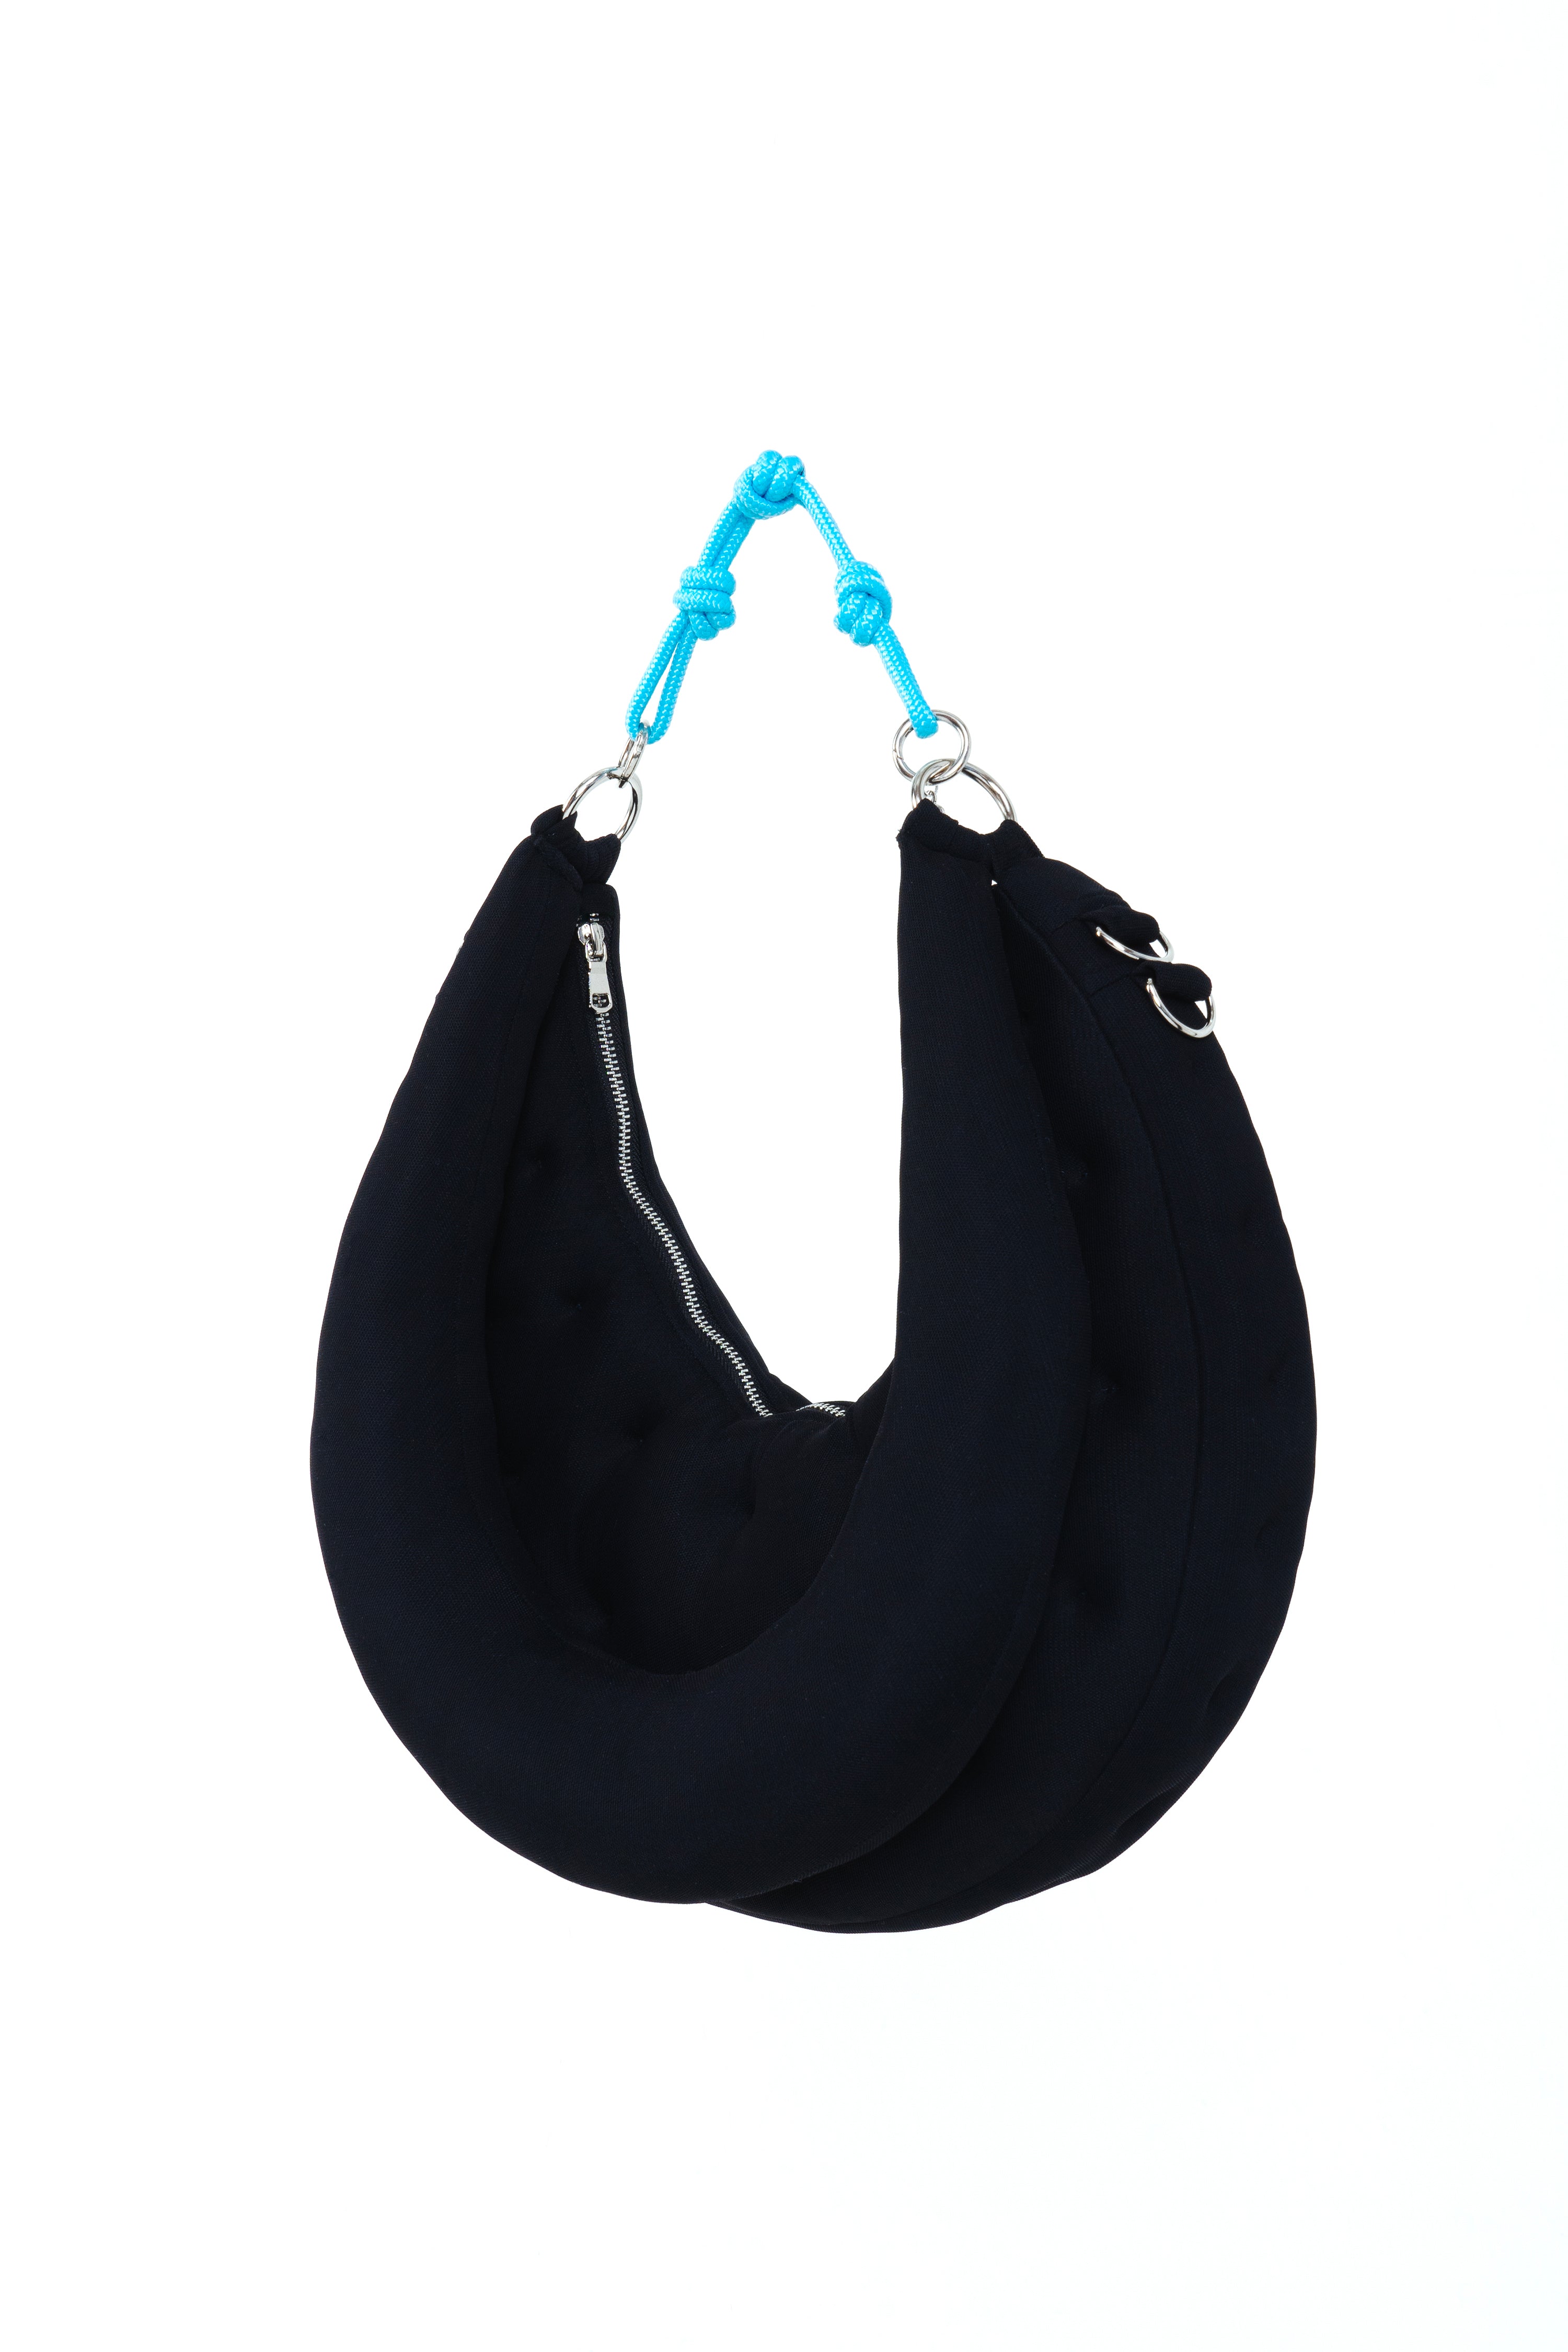 Bellflower Shoulder Bag - Black